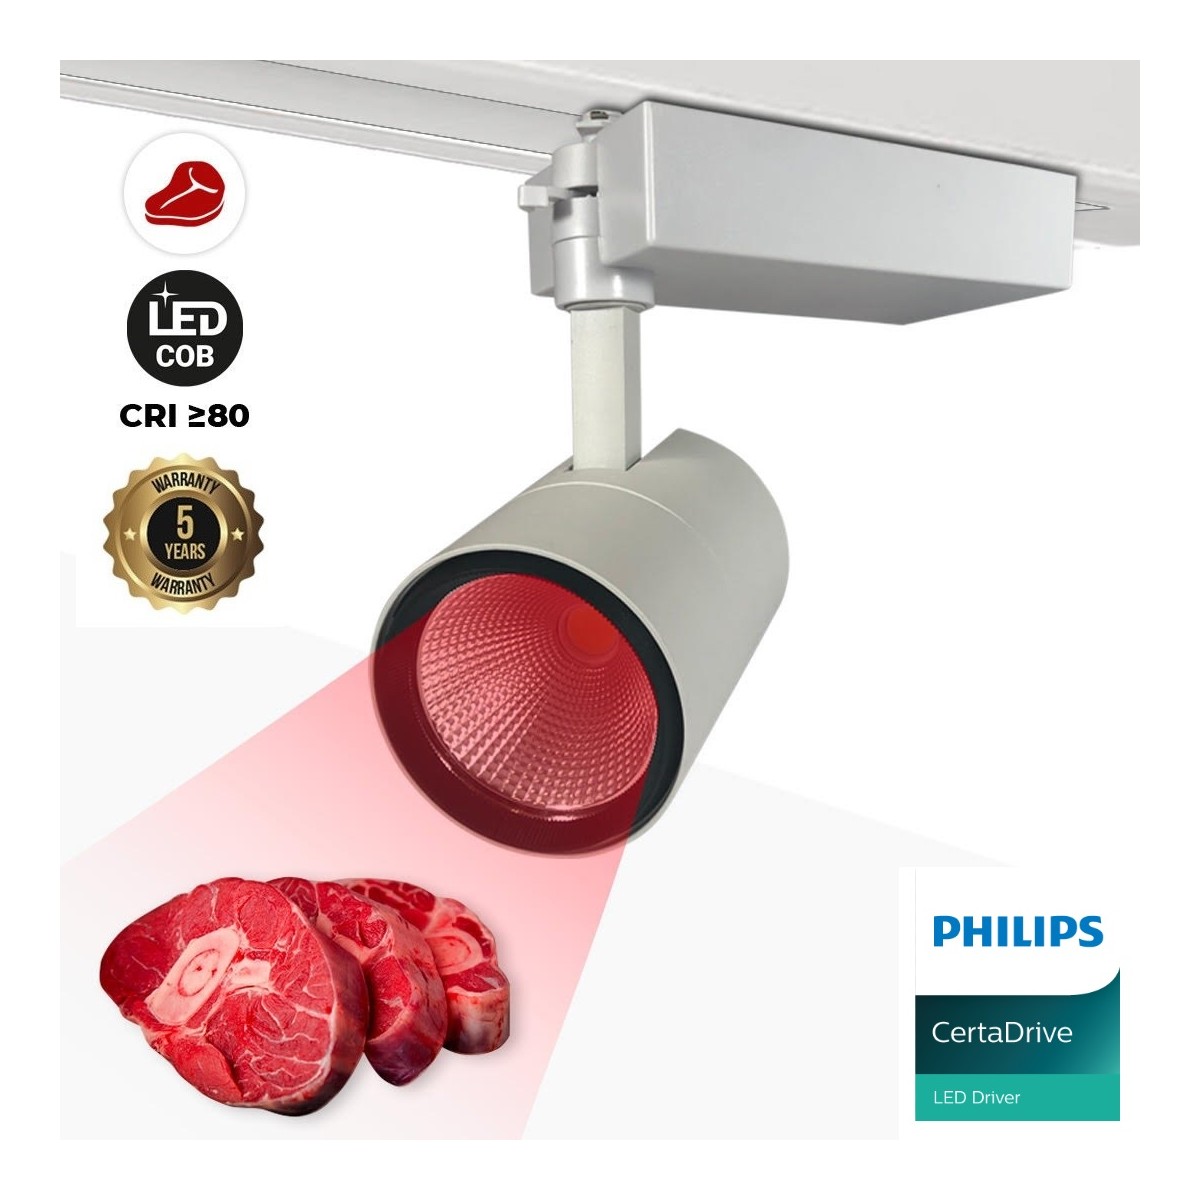 1-Phasen LED-Schienenstrahler für Metzgereien - Philips CertaDrive Treiber - LED COB - 40W